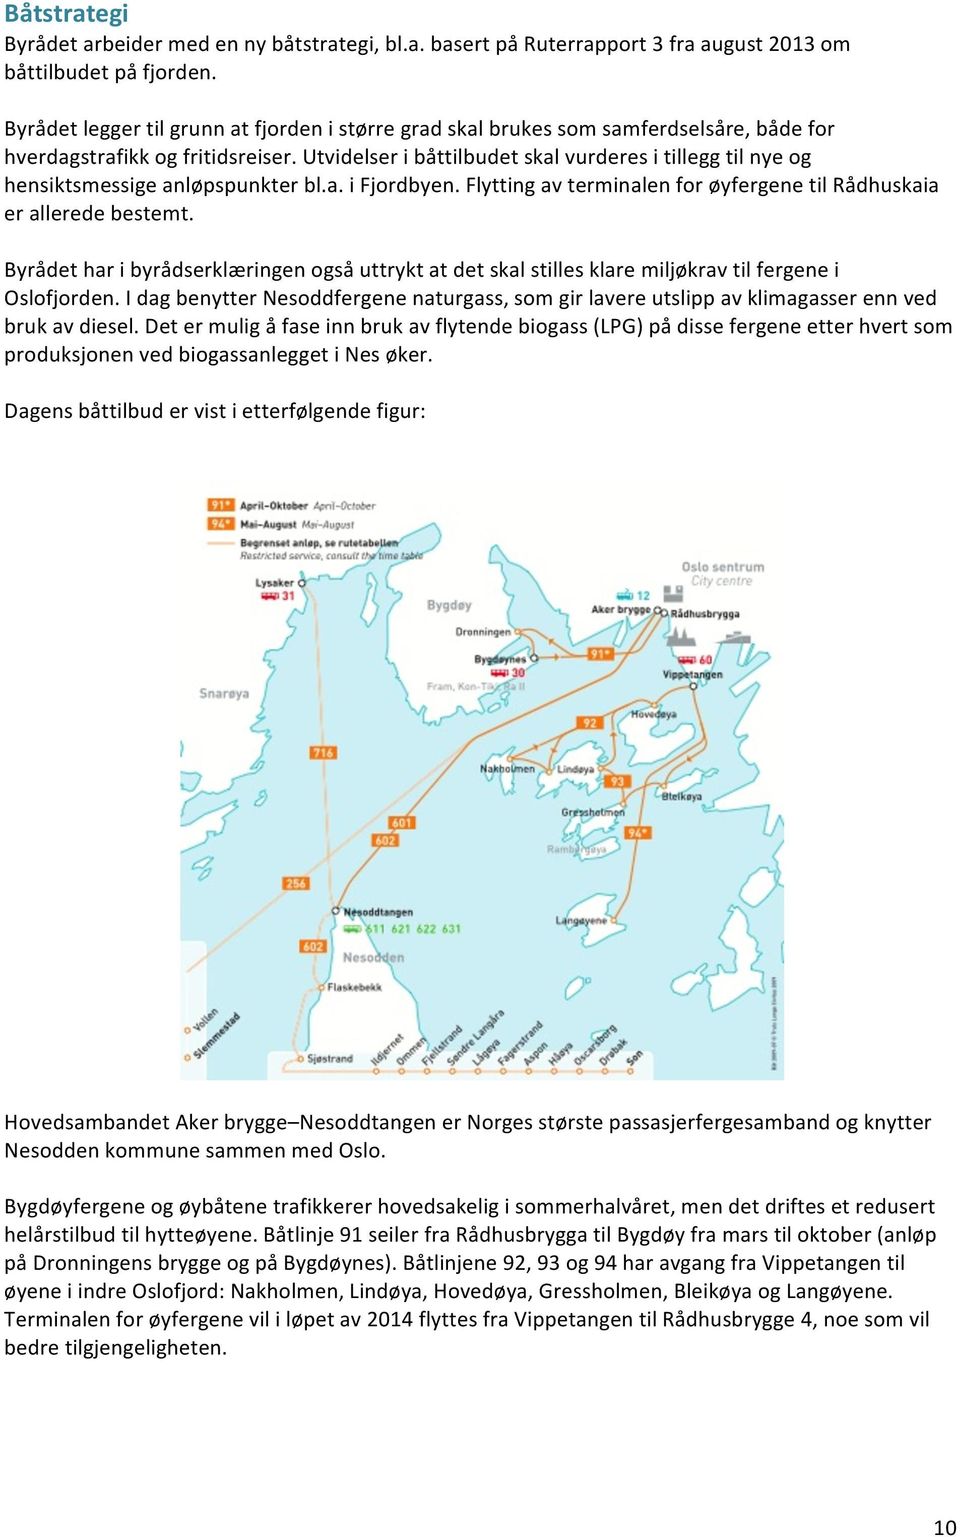 Utvidelser i båttilbudet skal vurderes i tillegg til nye og hensiktsmessige anløpspunkter bl.a. i Fjordbyen. Flytting av terminalen for øyfergene til Rådhuskaia er allerede bestemt.